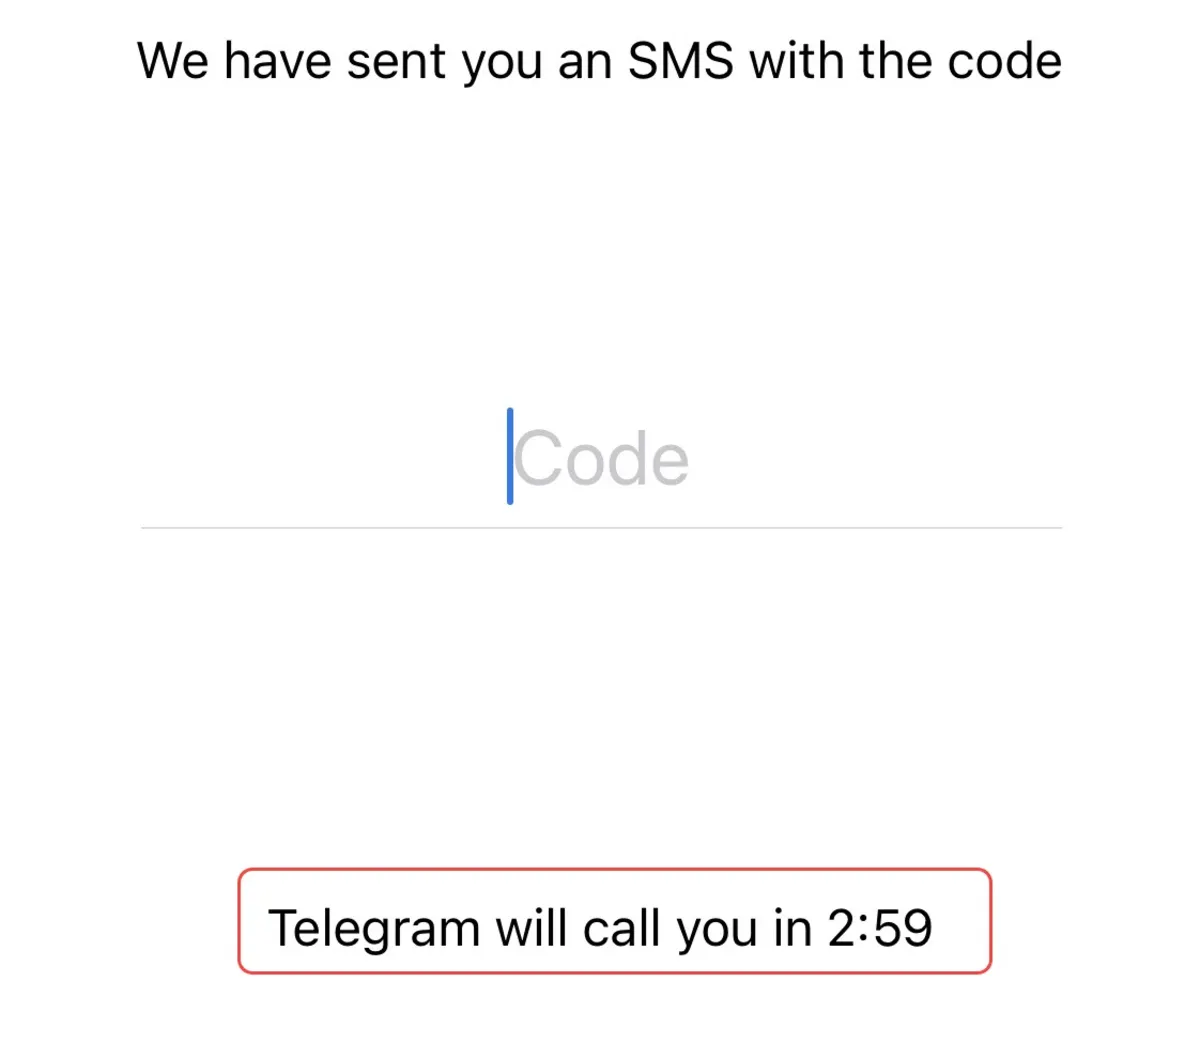 دریافت کد تلگرام با تماس